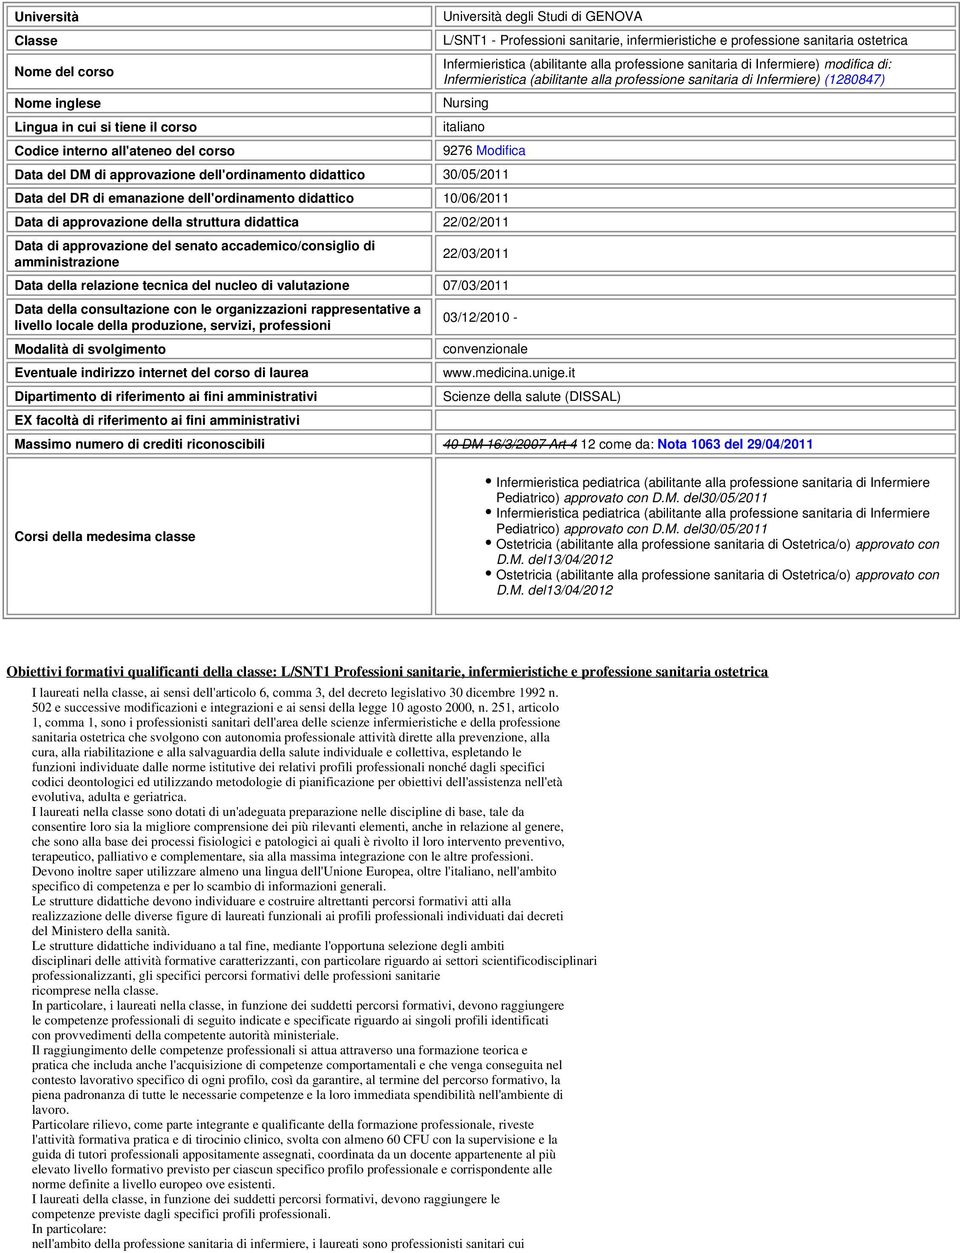 Nursing italiano 9276 Modifica Data del DM di approvazione dell'ordinamento didattico 30/05/2011 Data del DR di emanazione dell'ordinamento didattico 10/06/2011 Data di approvazione della struttura